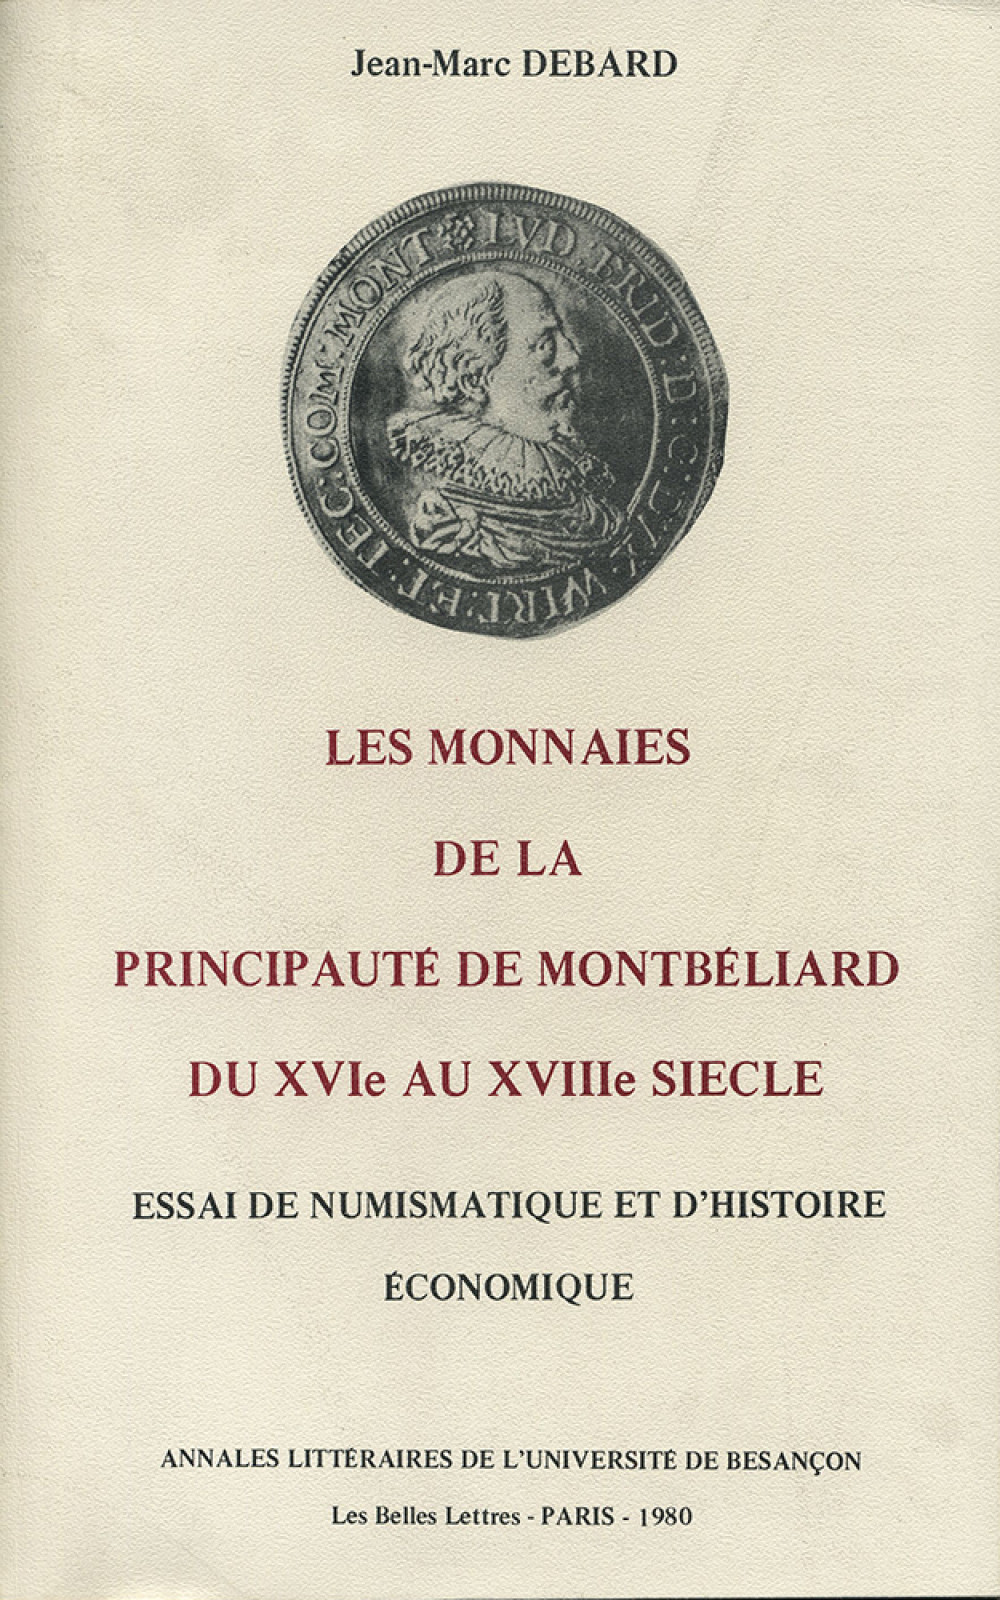 Les monnaies de la principauté de Montbéliard du XVIe au XVIIIe siècle